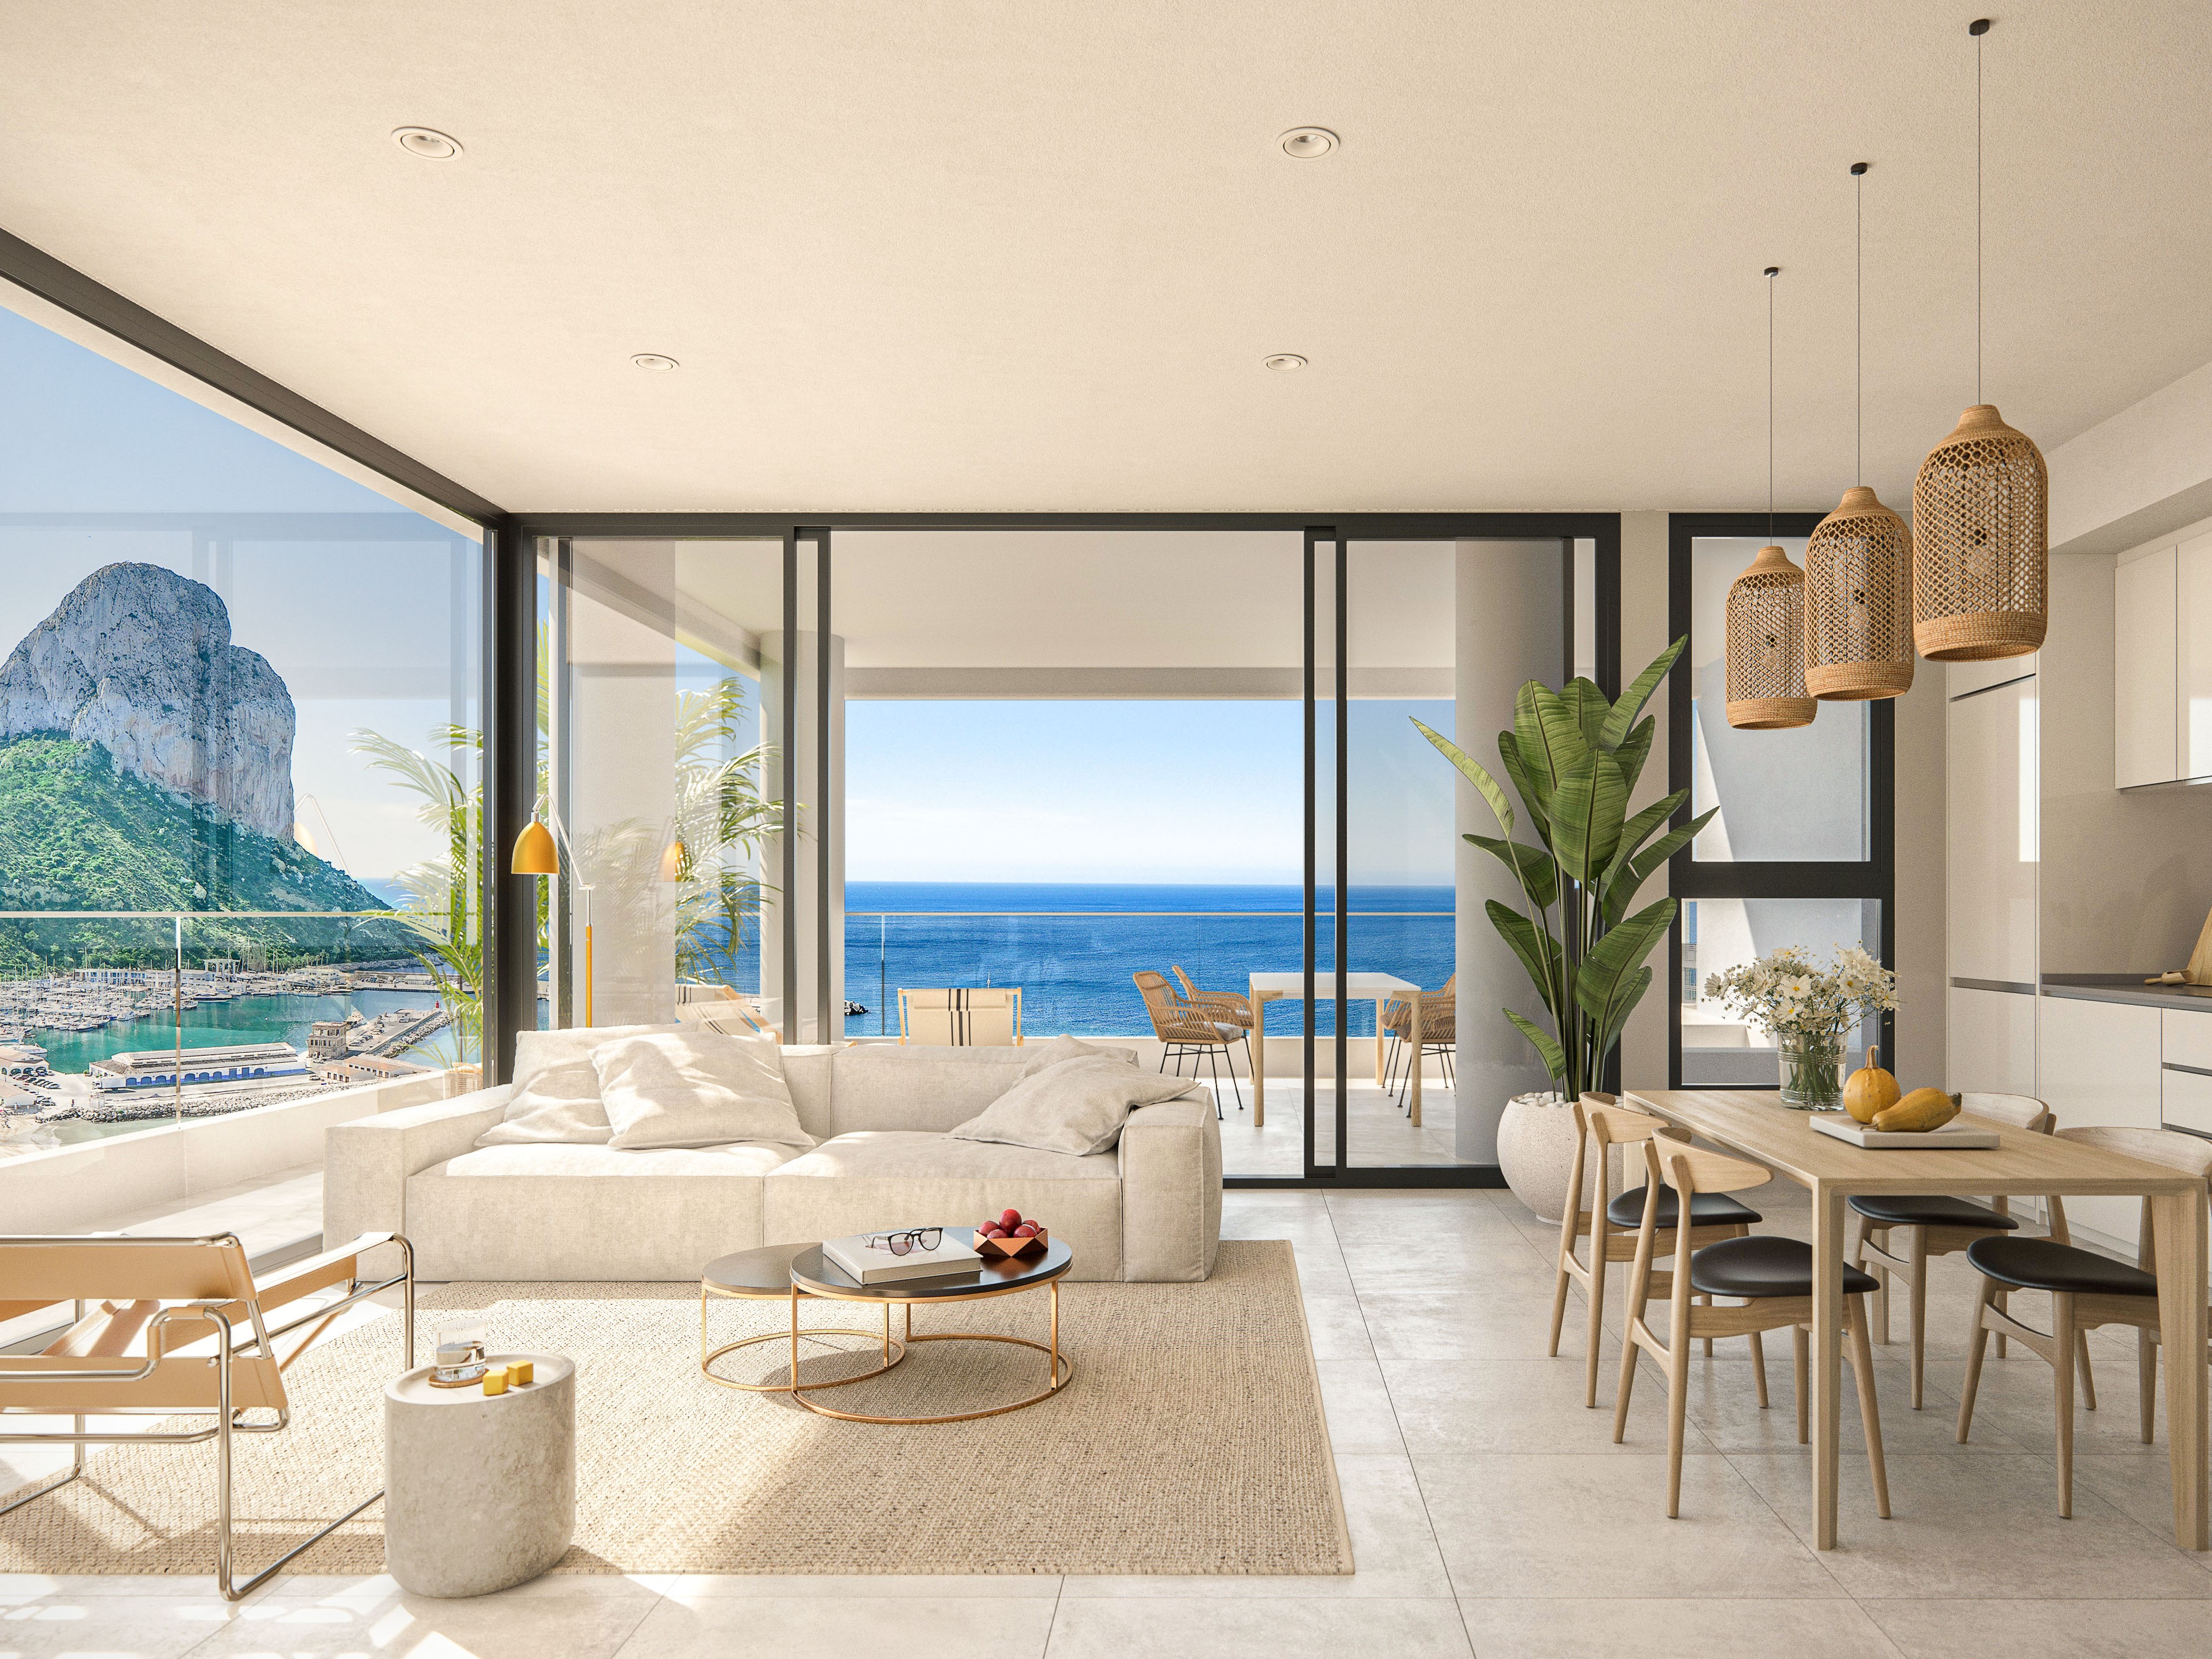 Apartamentos modernos de nueva construcción con vistas al mar en Calpe. Unidades de 1, 2 o 3 dormitorios. Ubicación ideal.